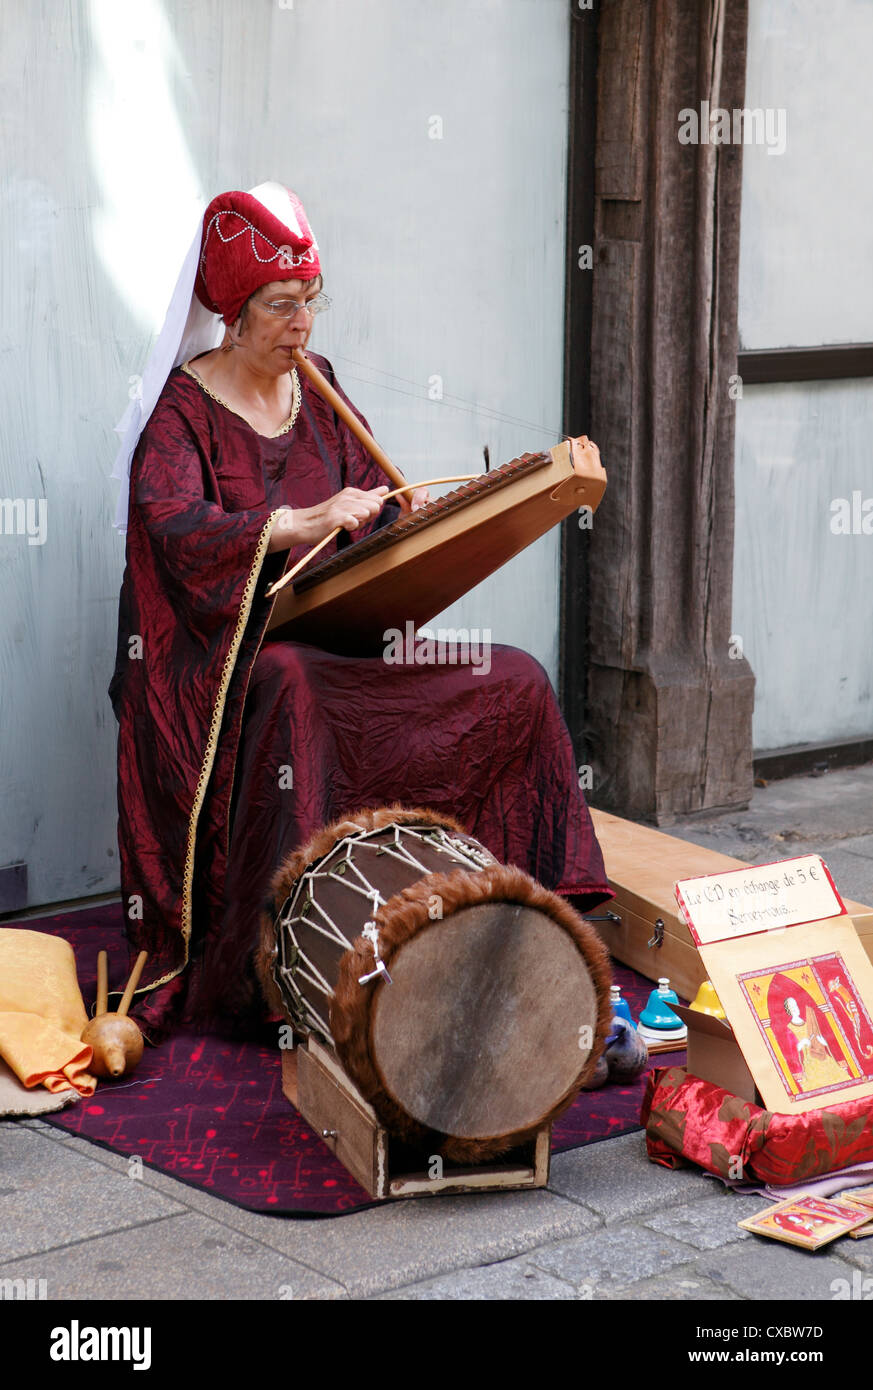 Musicien jouant les instruments du moyen âge. Instrument à vent Simple  psaltérion et tambour. Dinan, France Photo Stock - Alamy